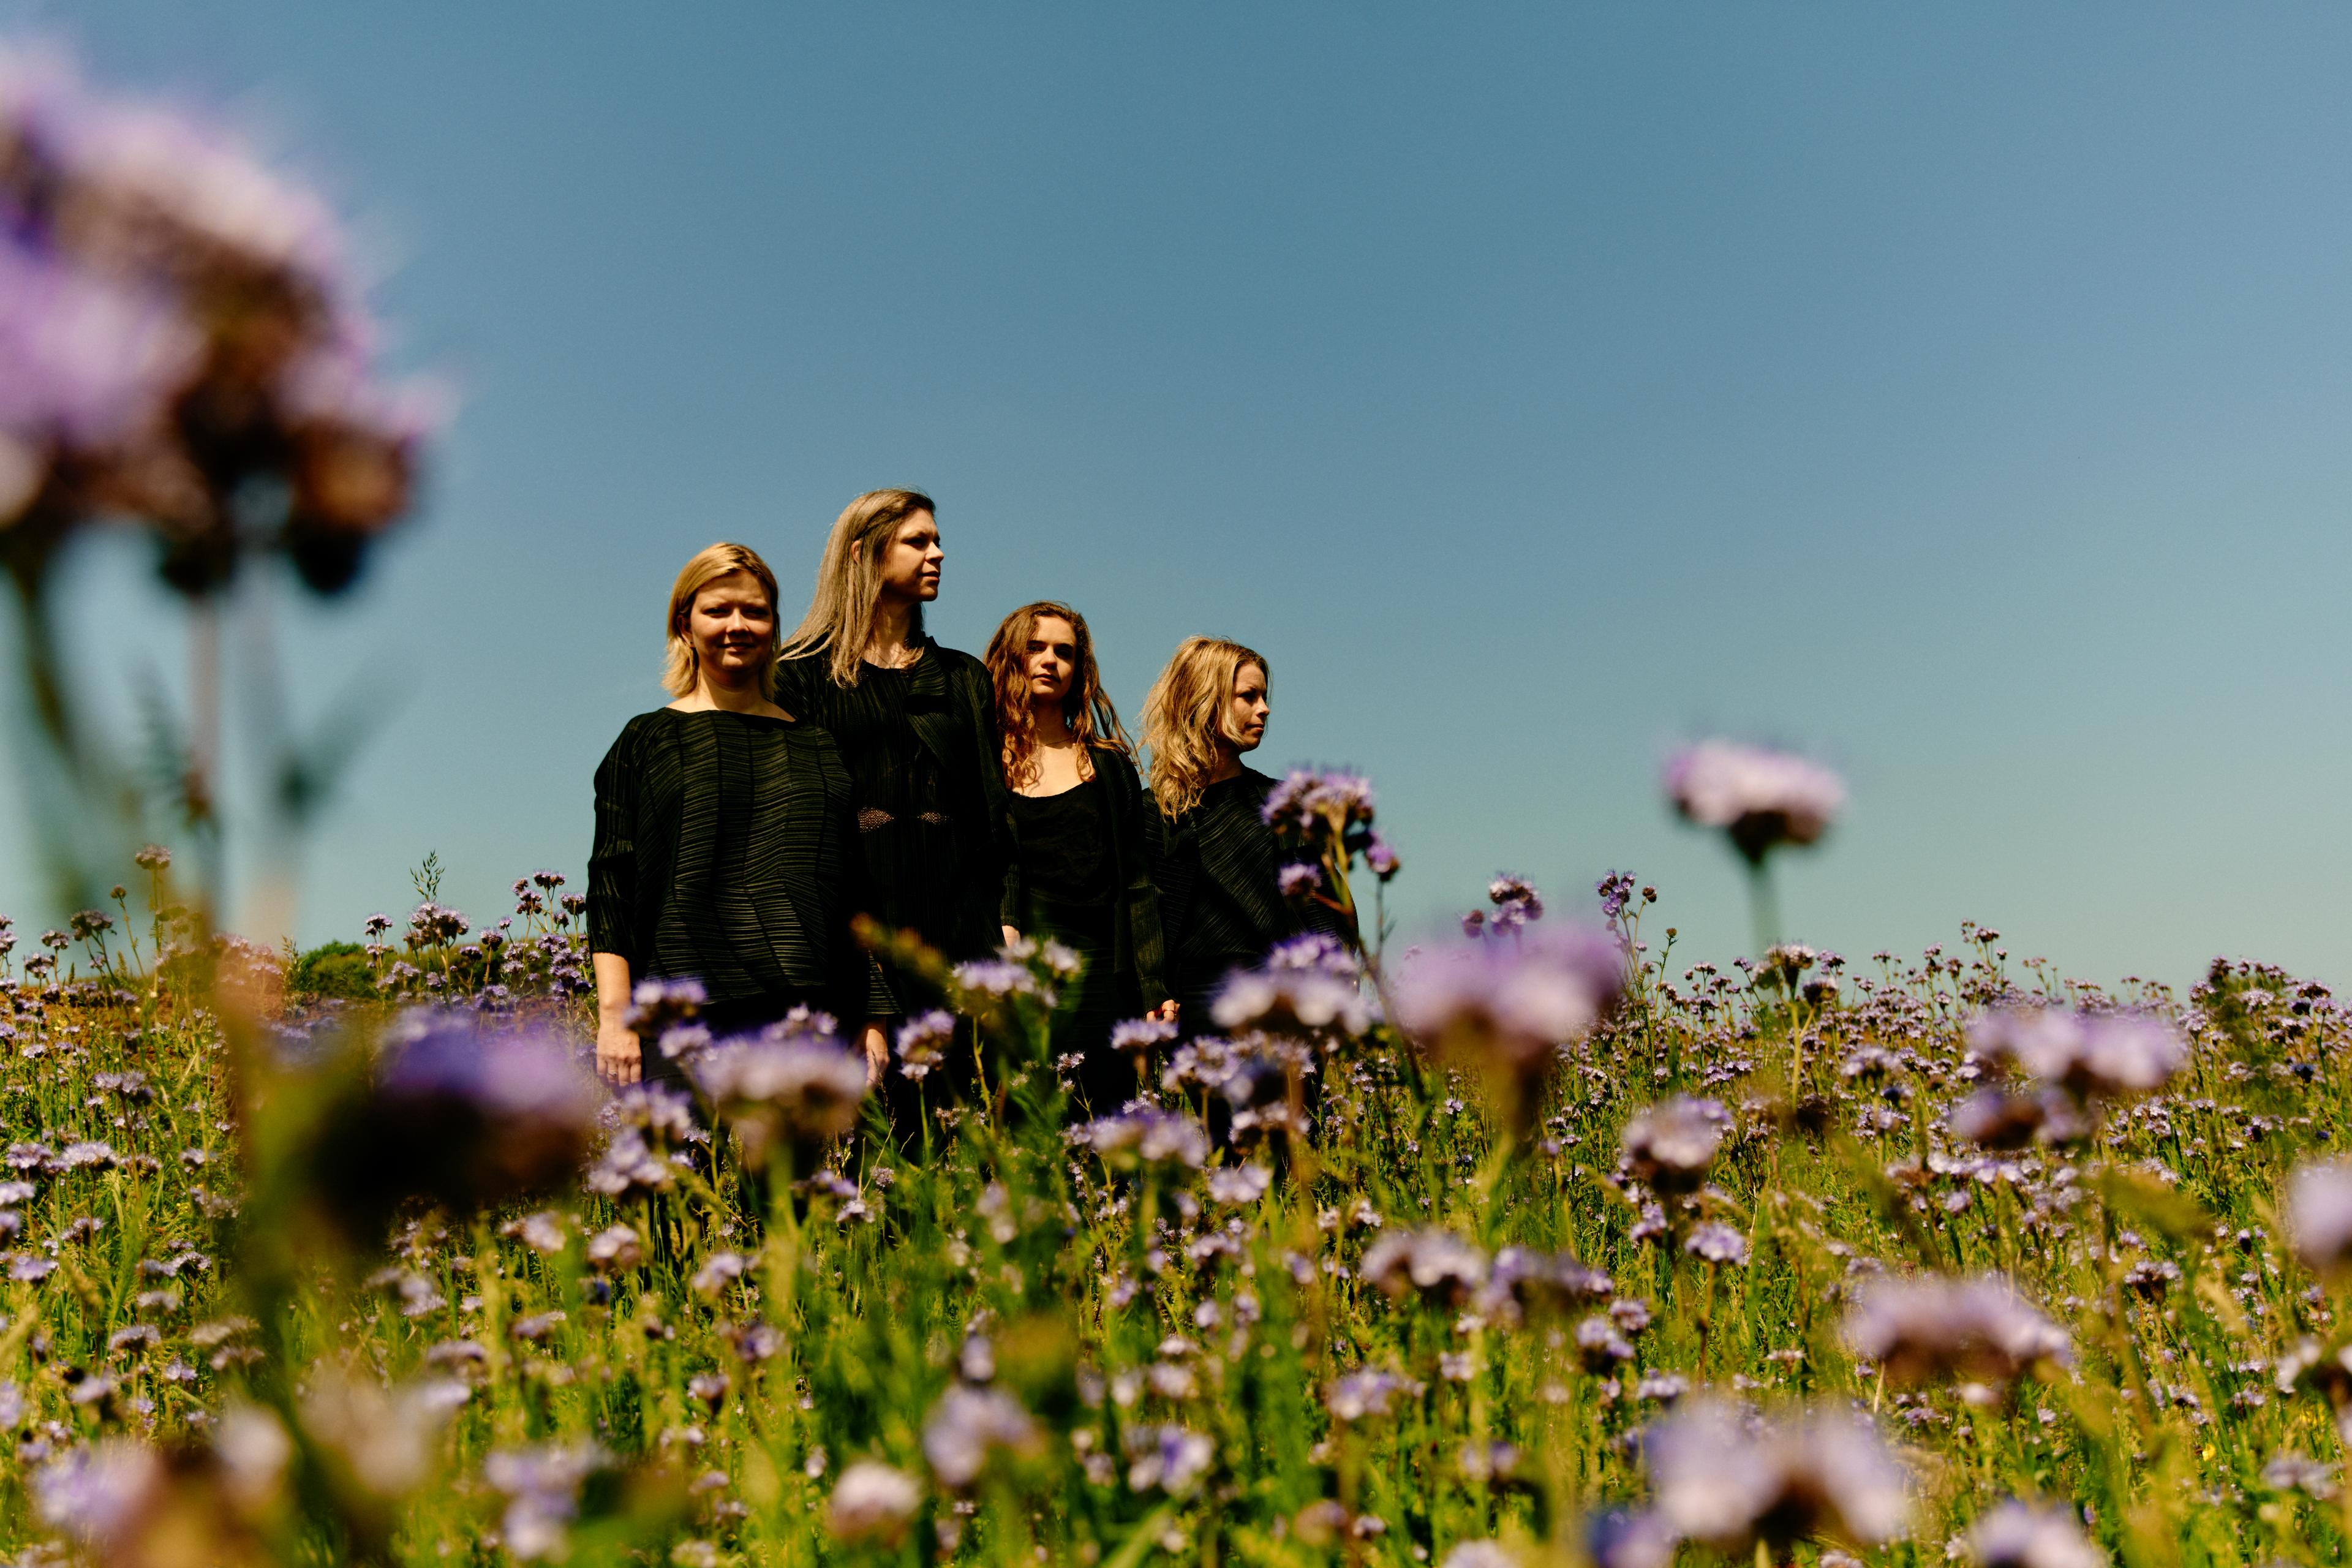 4 women wearing black standing in a field of wild flowers under a blue sky